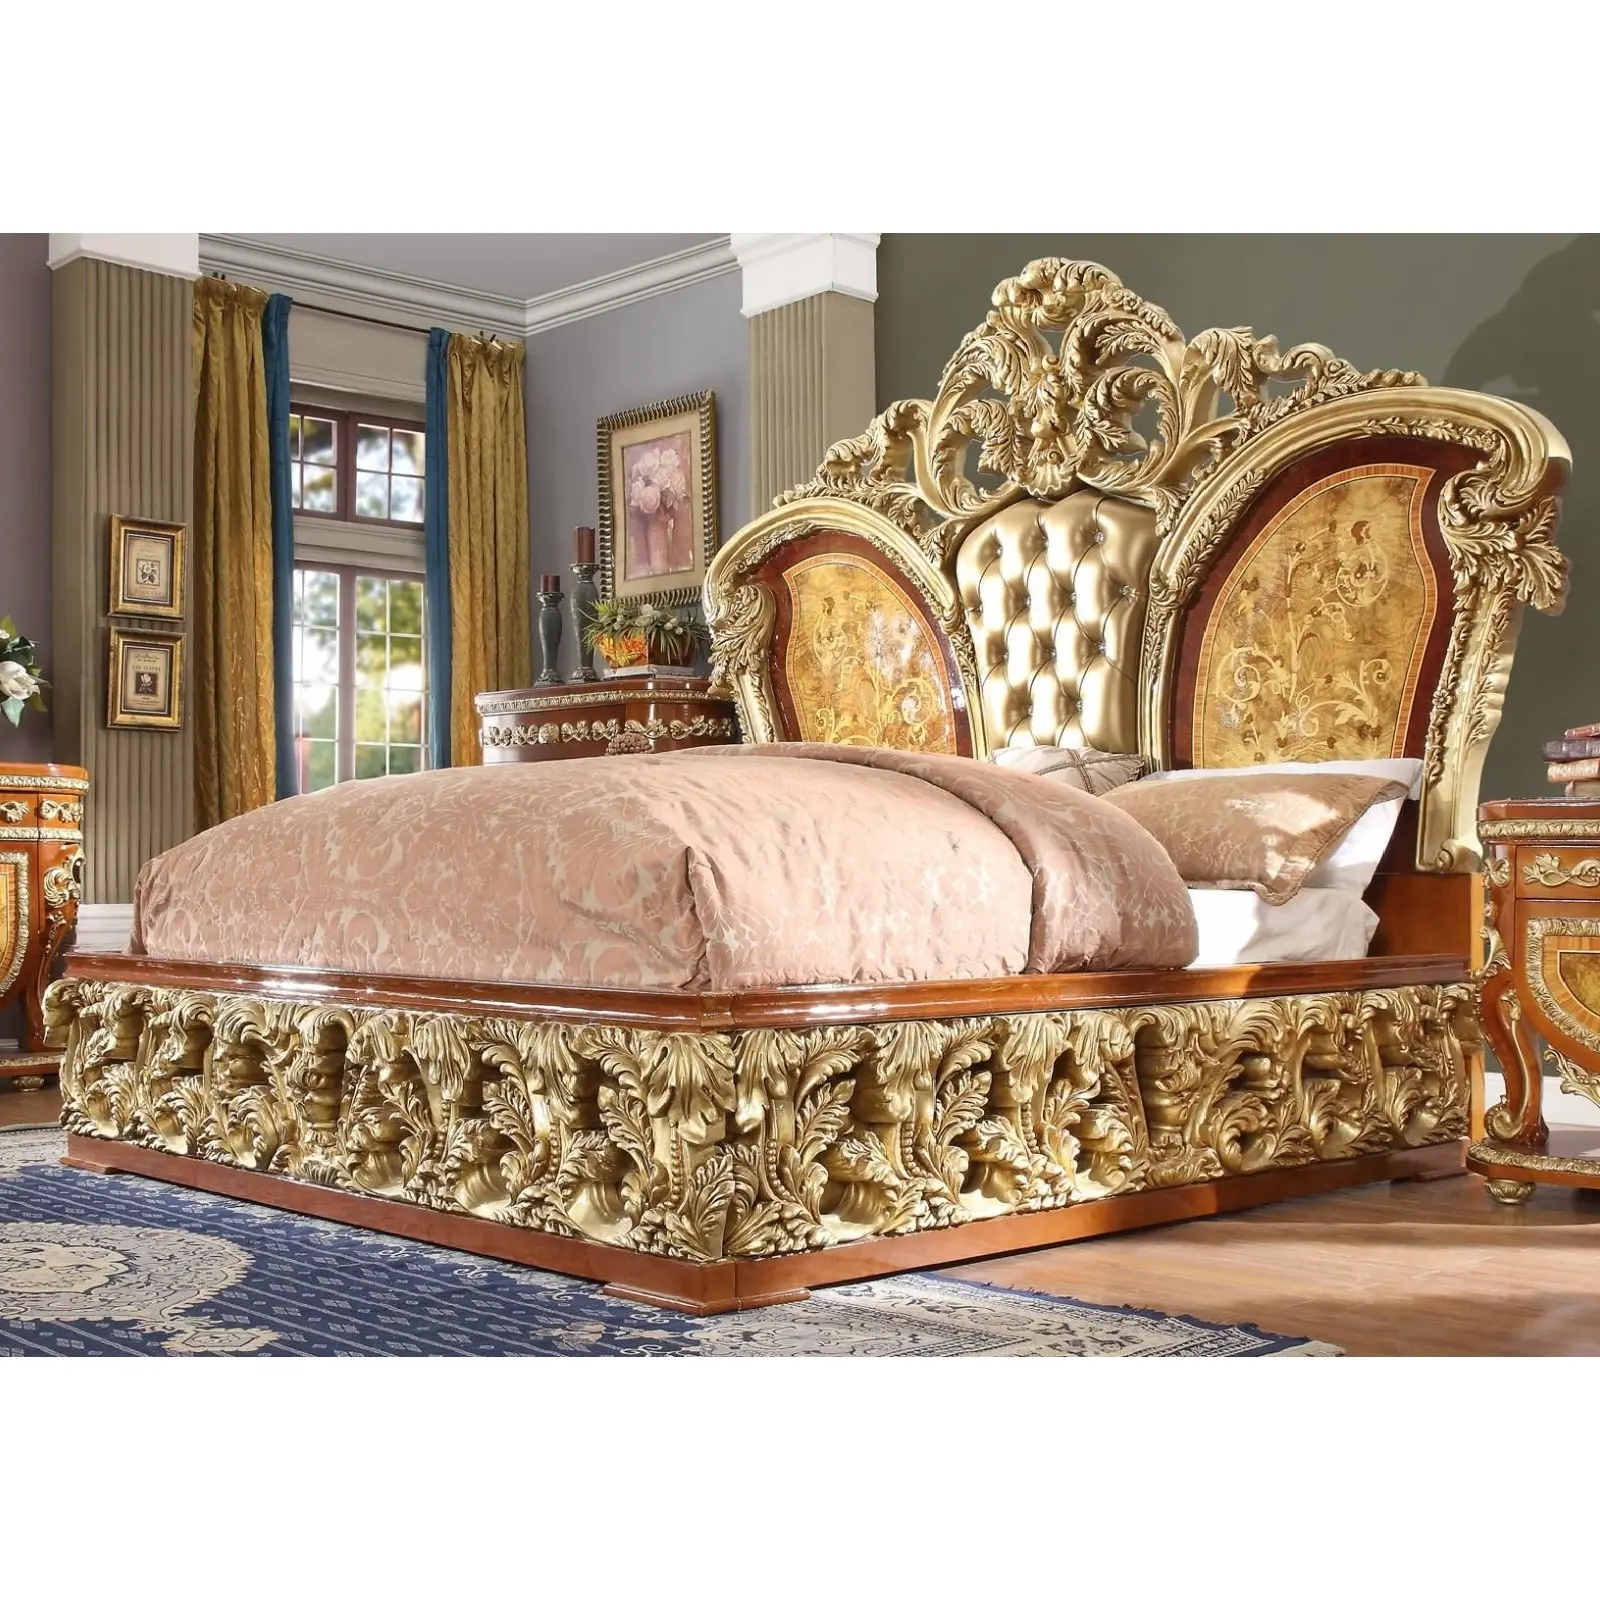 Juego de muebles de dormitorio de madera clásicos de estilo europeo de lujo, juego de dormitorio de tamaño Queen artesanal de madera, tamaño King asequible tallado a mano